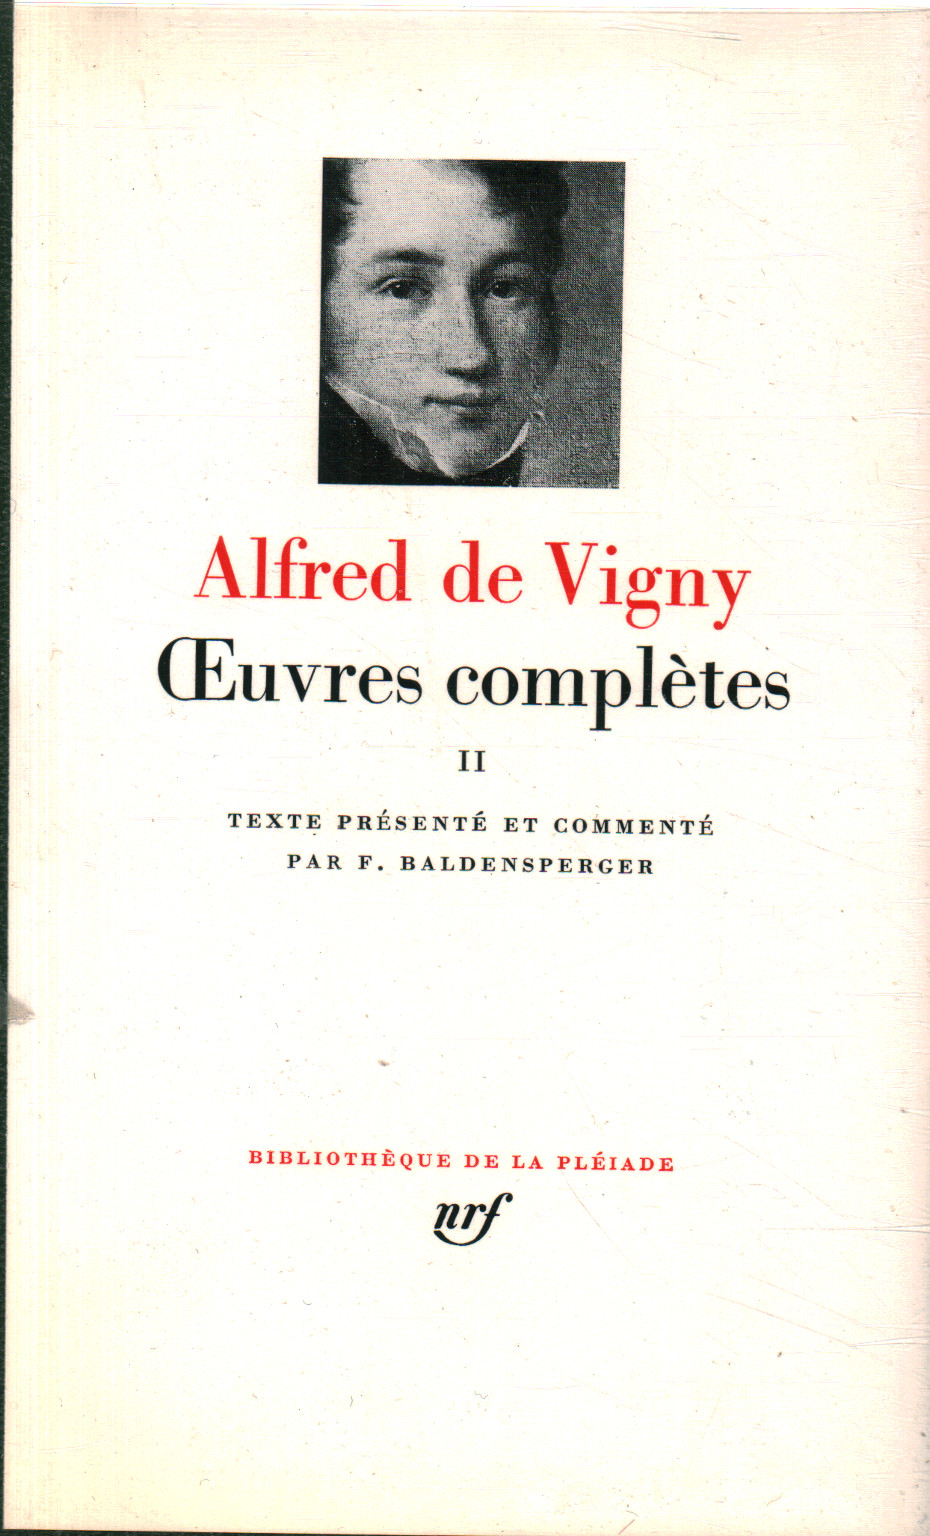 Trabajos completos. Volumen II, Alfred De Vigny